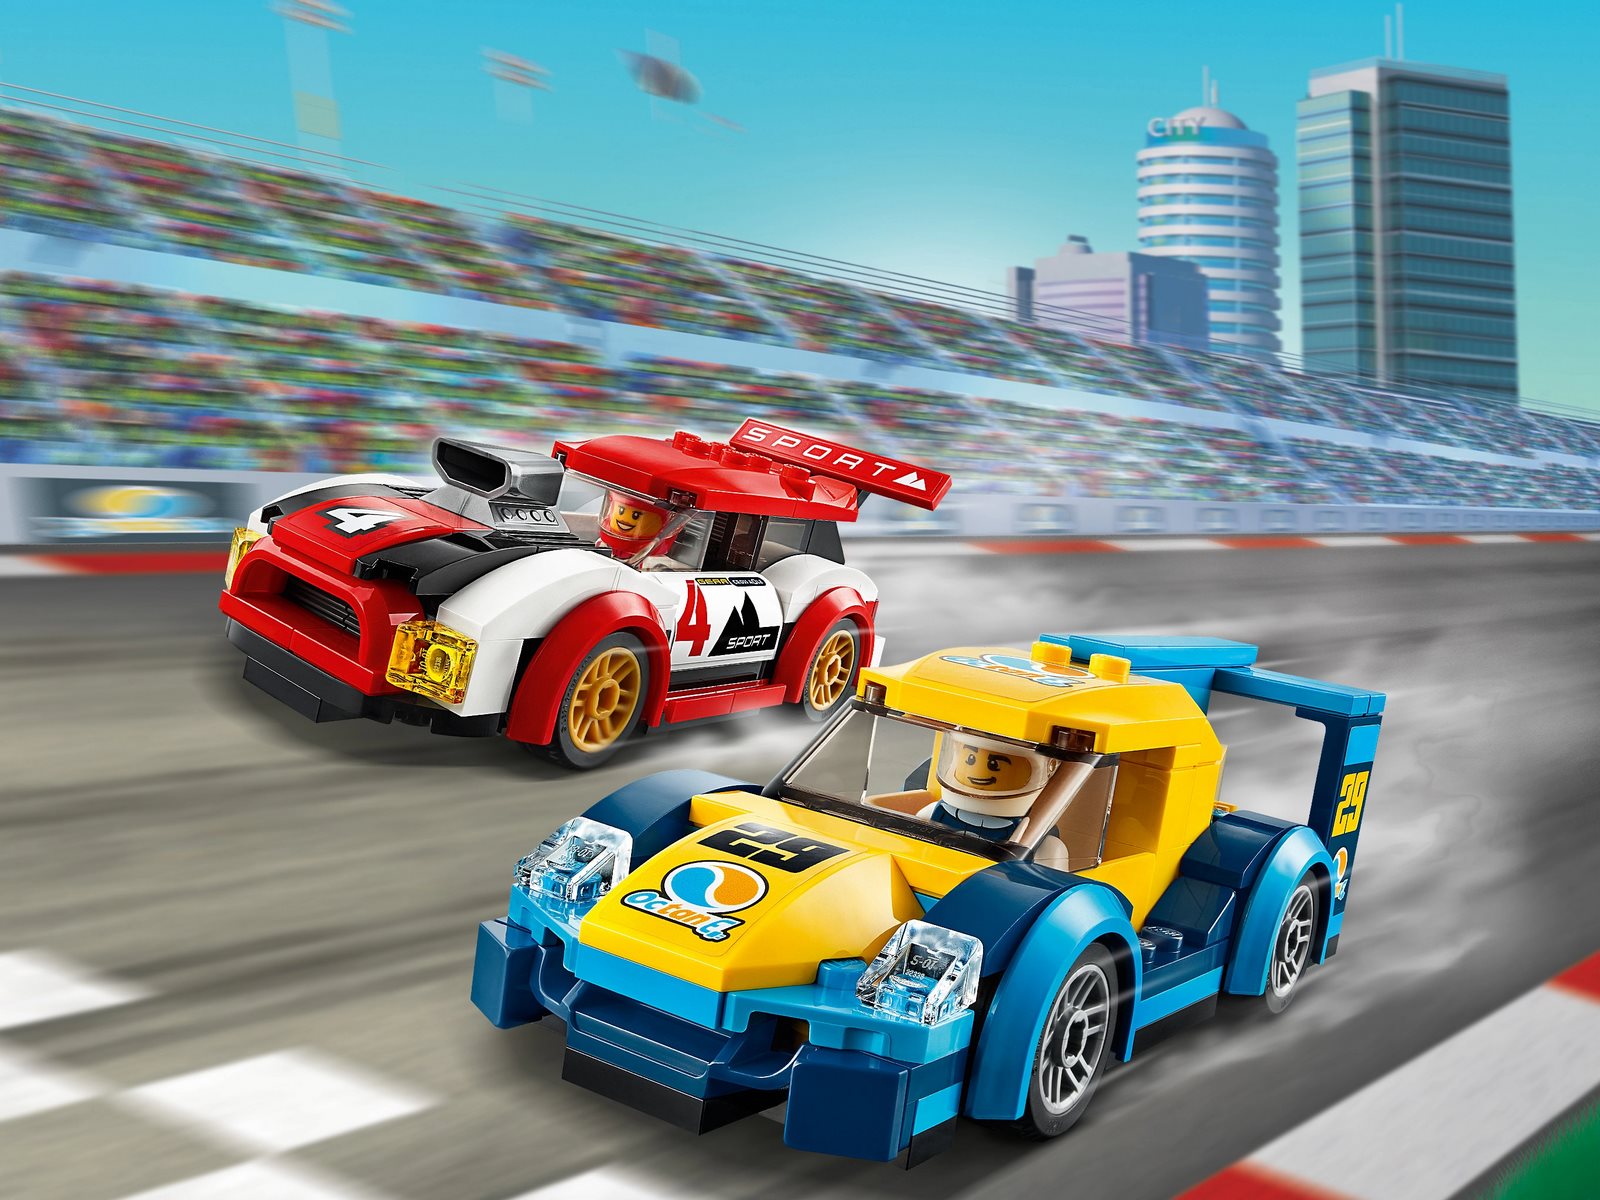 Конструктор LEGO City Nitro Wheels 60256 «Гоночные автомобили» / 190 деталей